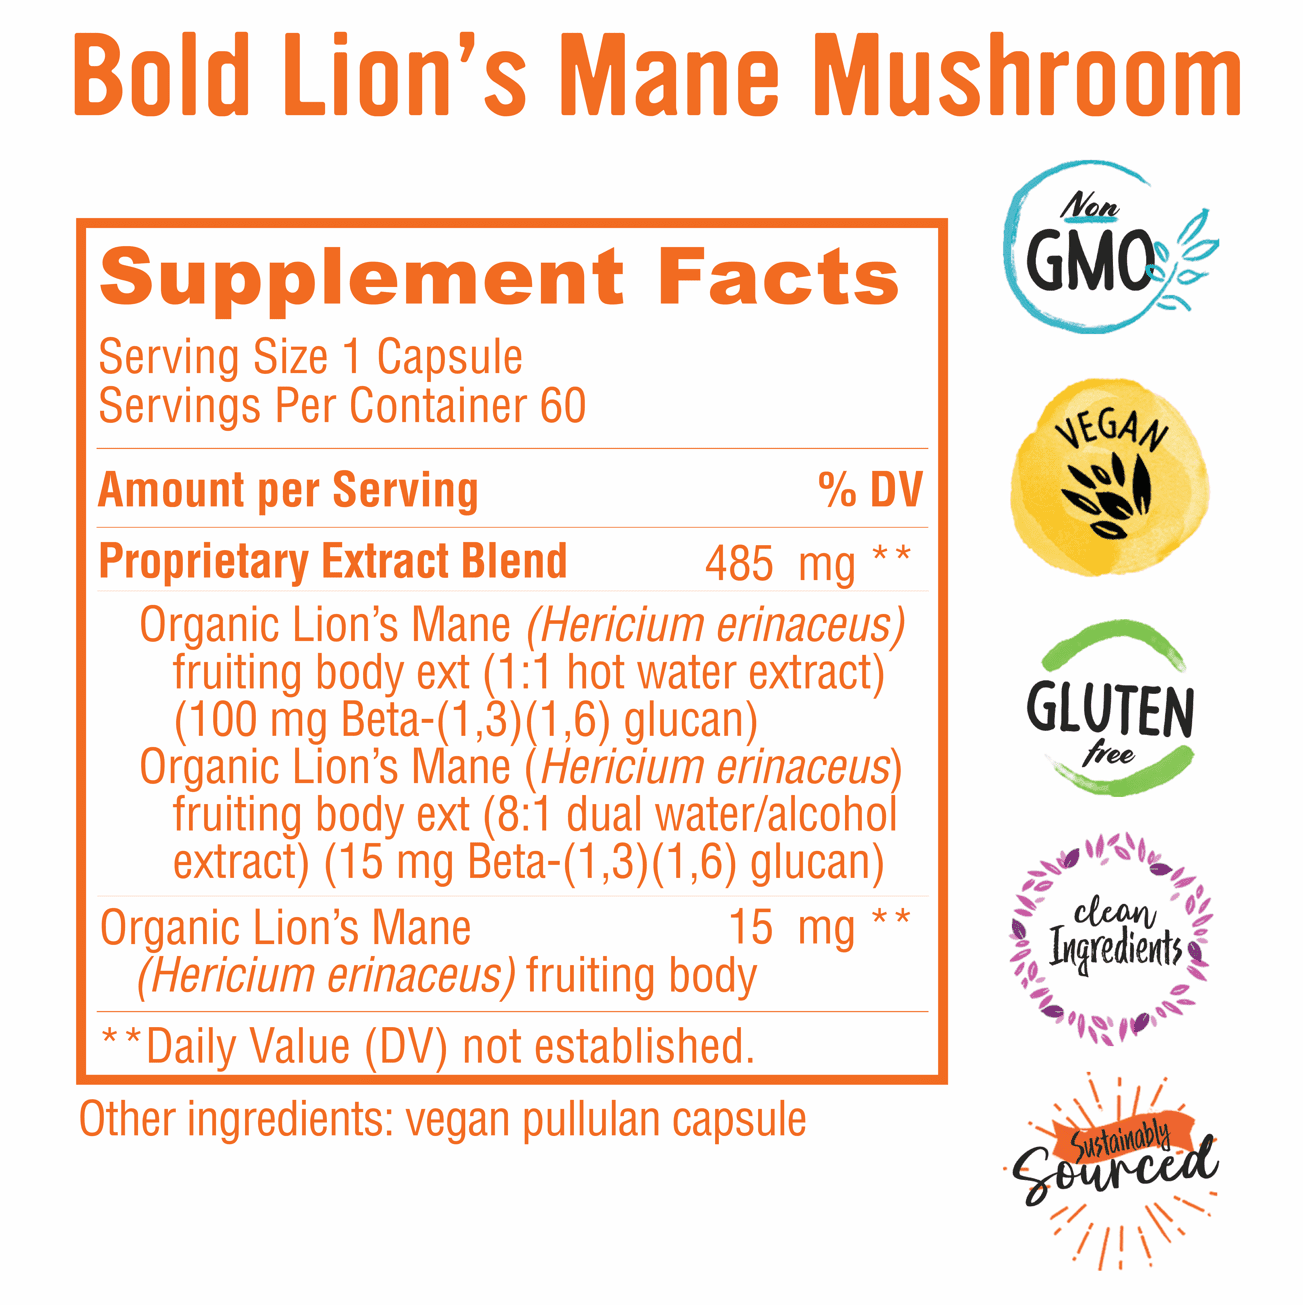 Bold Lion's Mane Mushroom